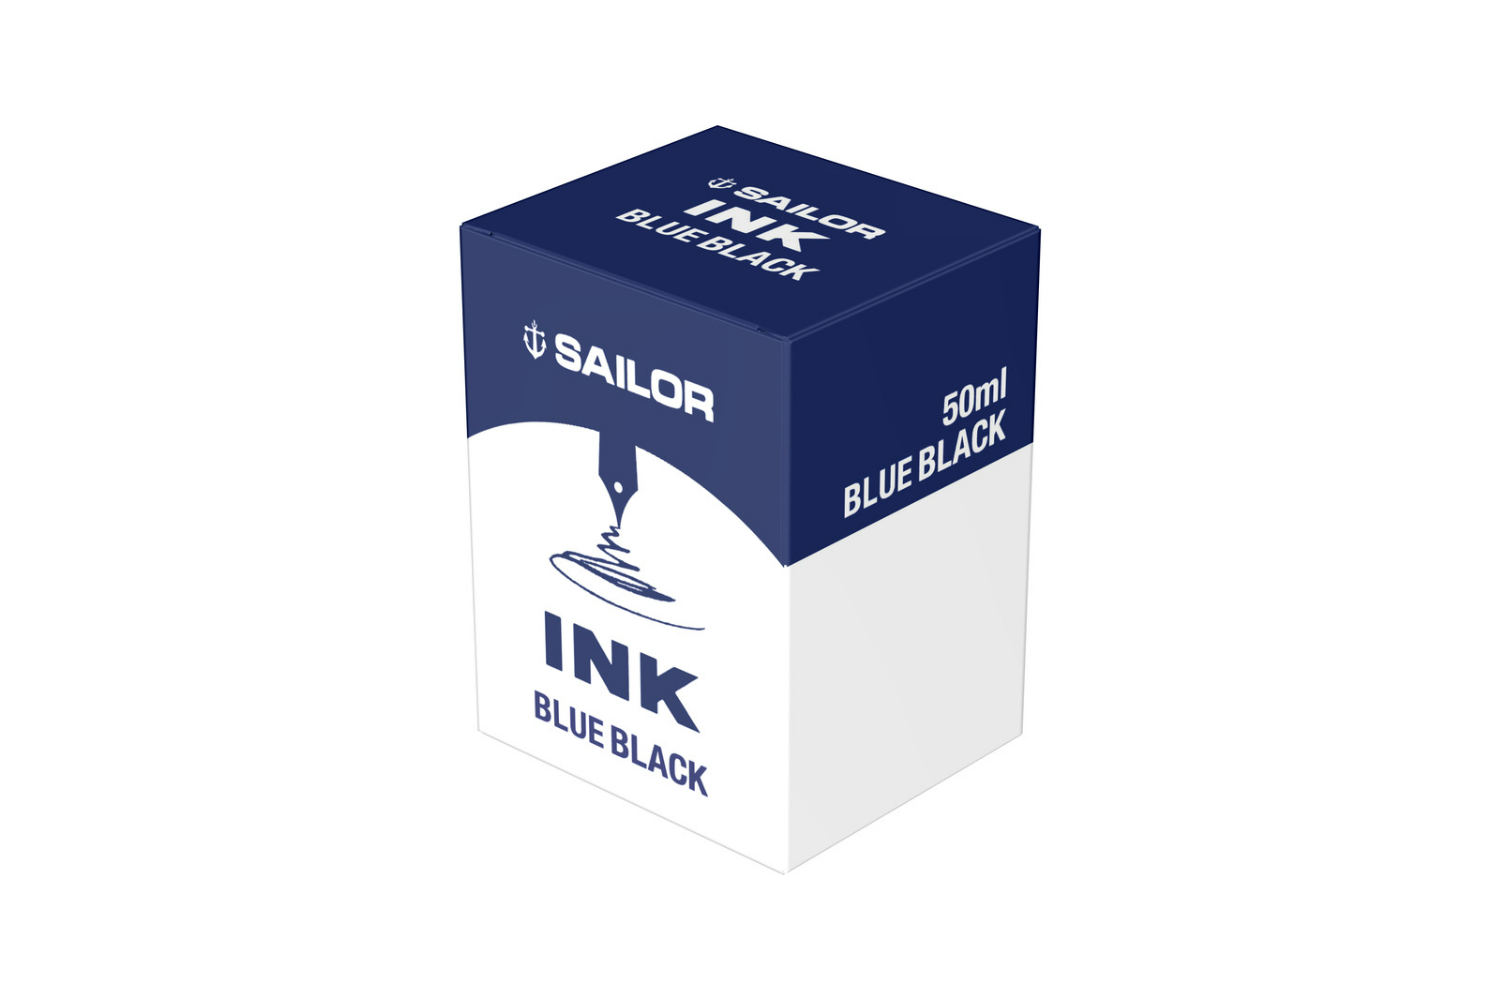 Sailor - Basic Blue-Black Ink 50ml